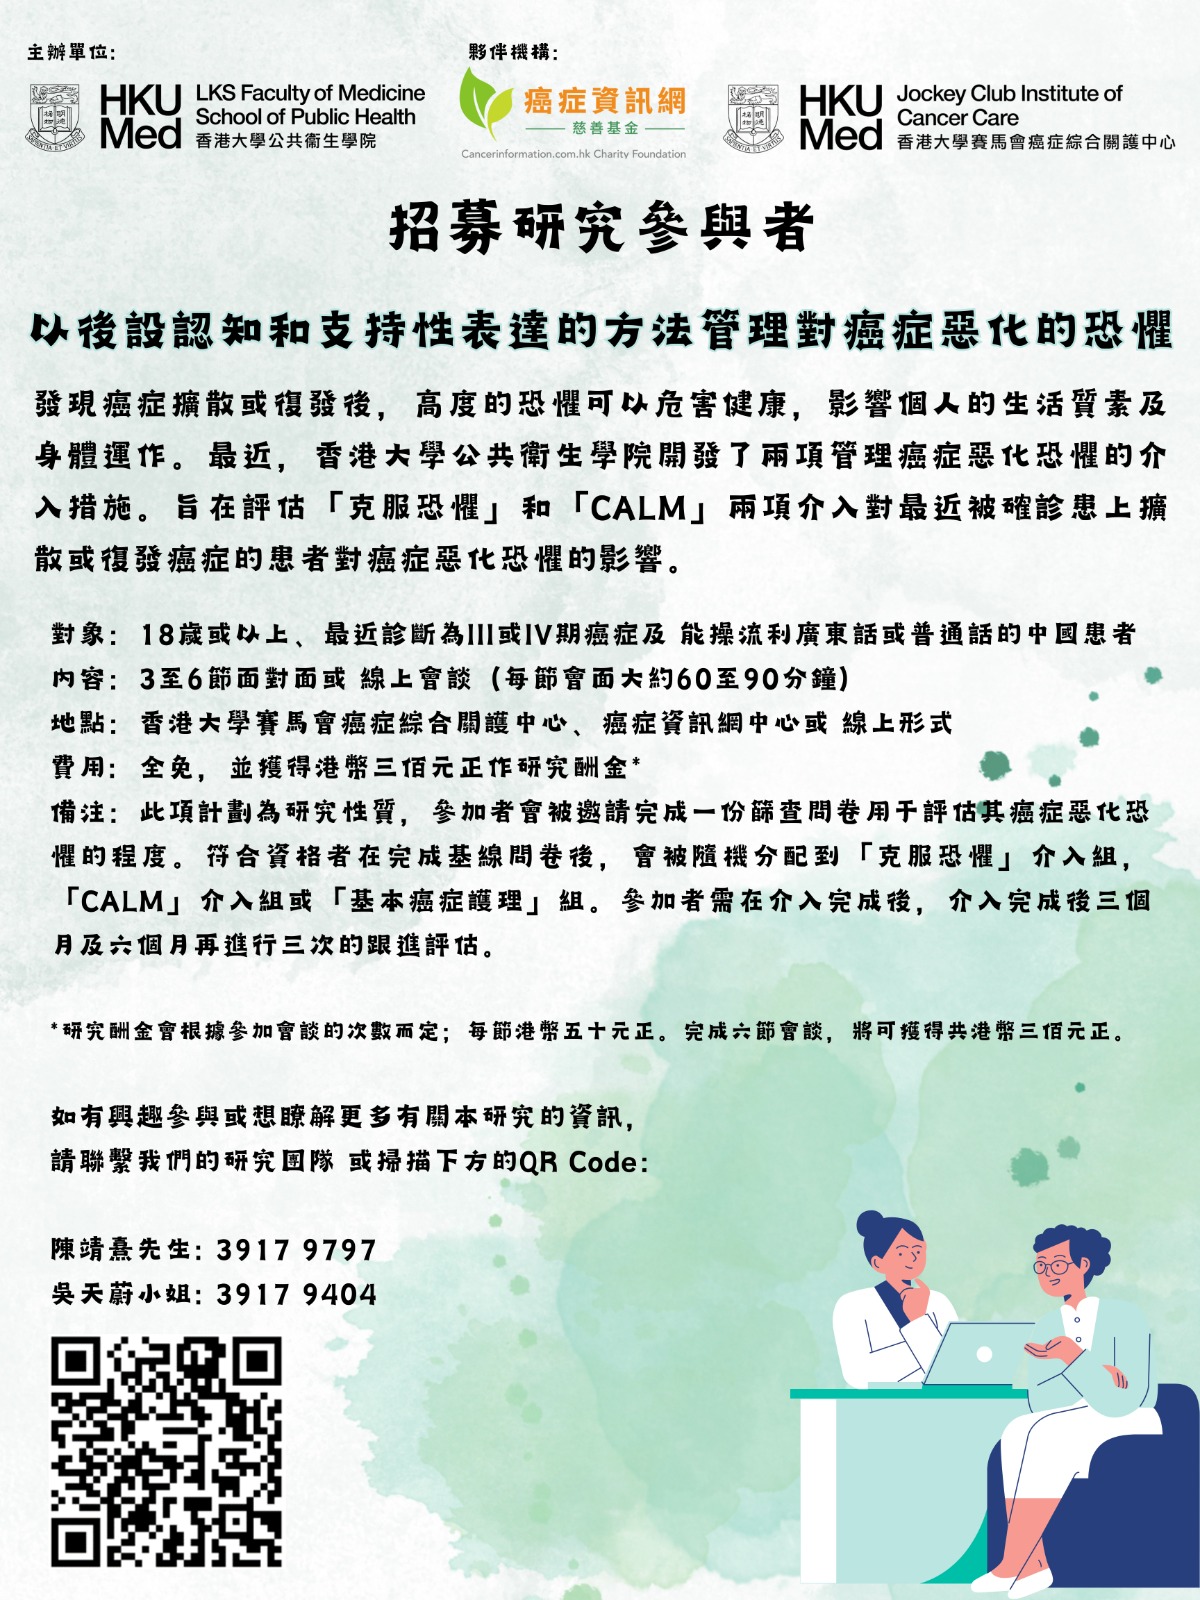 【香港大學】以後設認知和支持性表達的方法管理對癌症惡化的恐懼  招募研究參與者